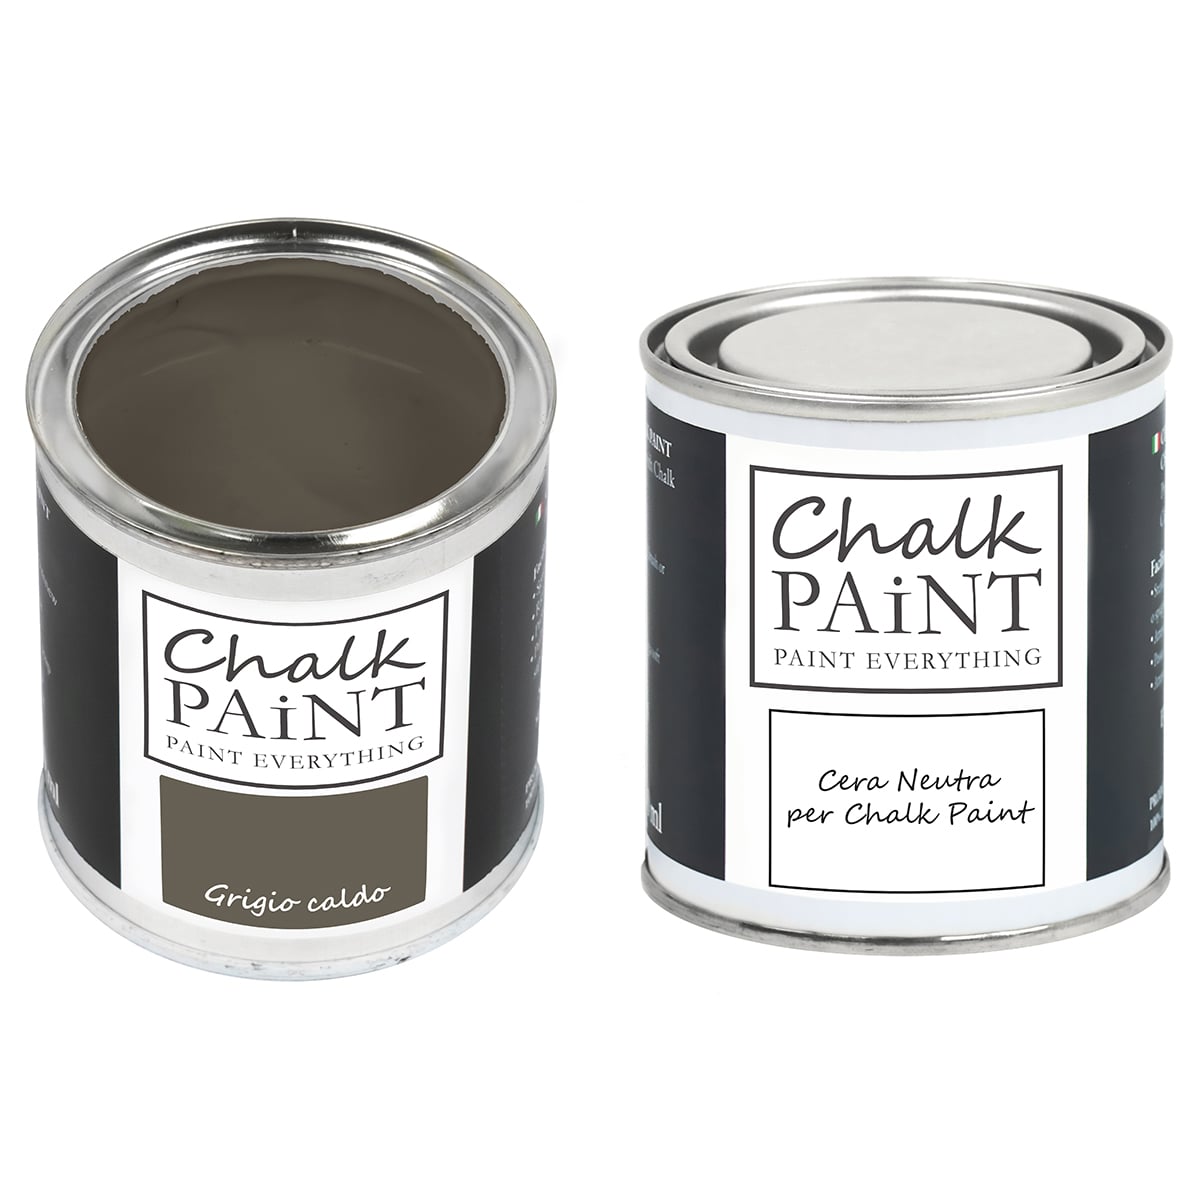 Grigio caldo Chalk paint e cera in offerta decora facile con paint magic